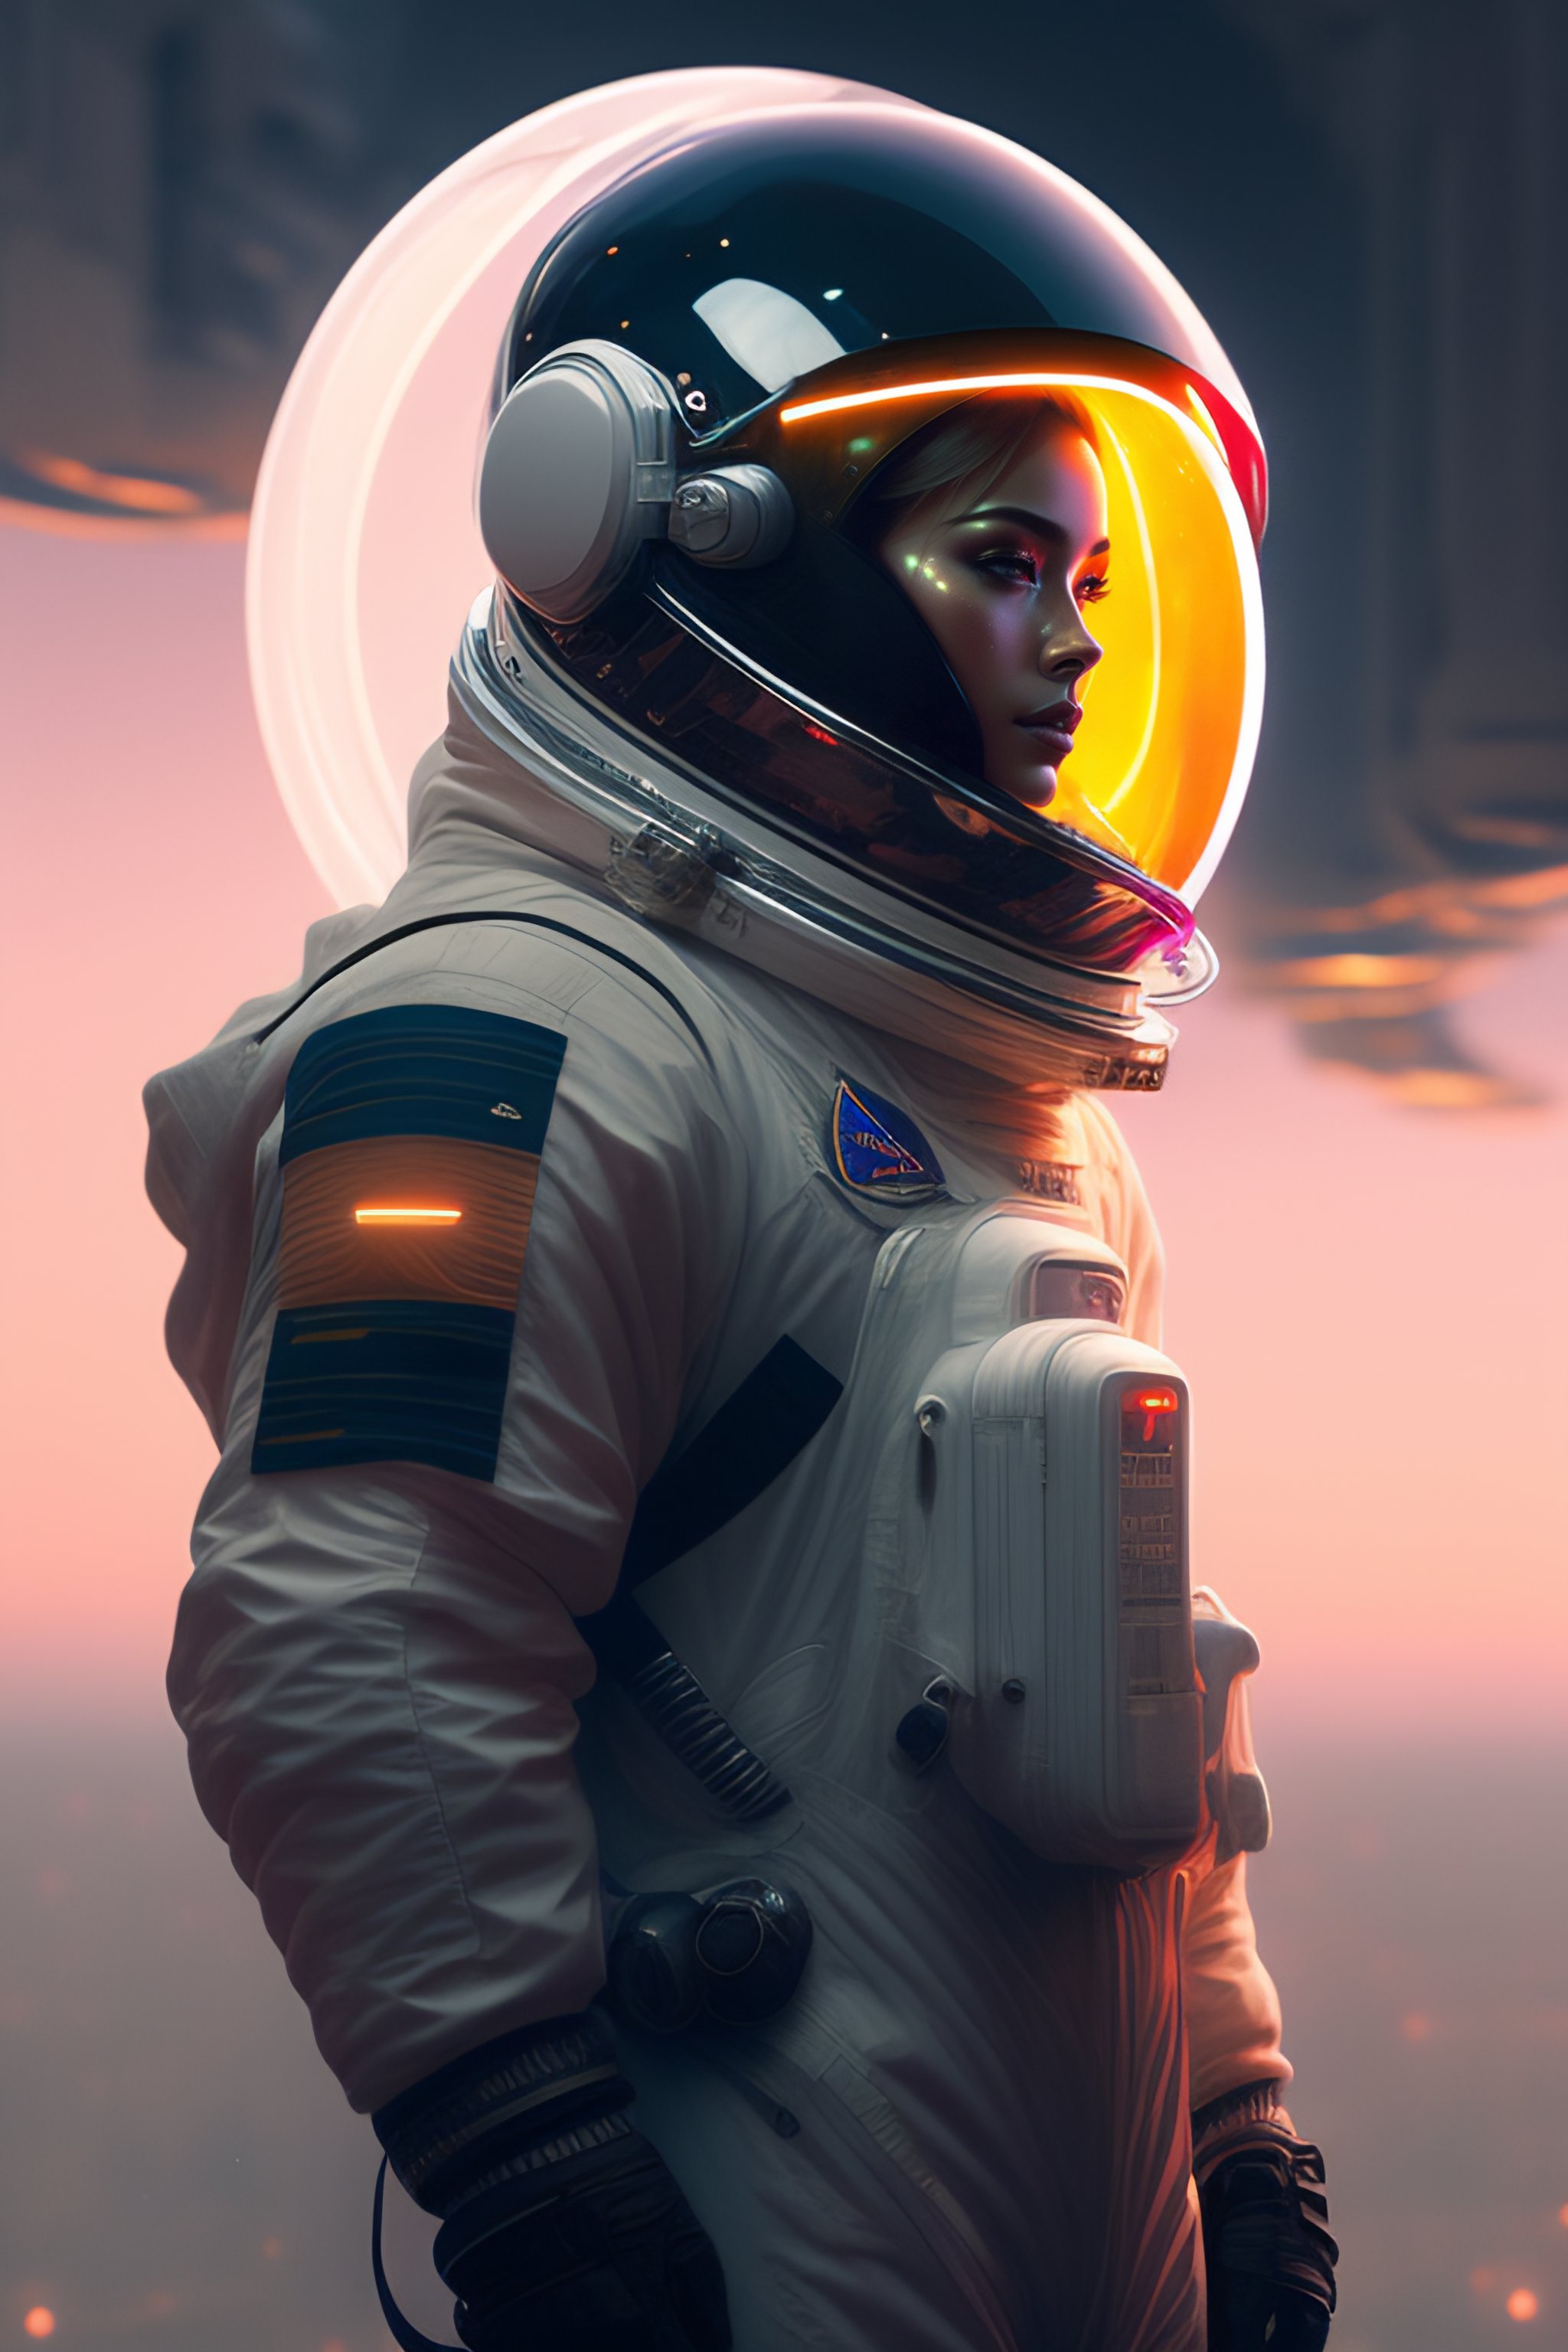 futuristic space helmet